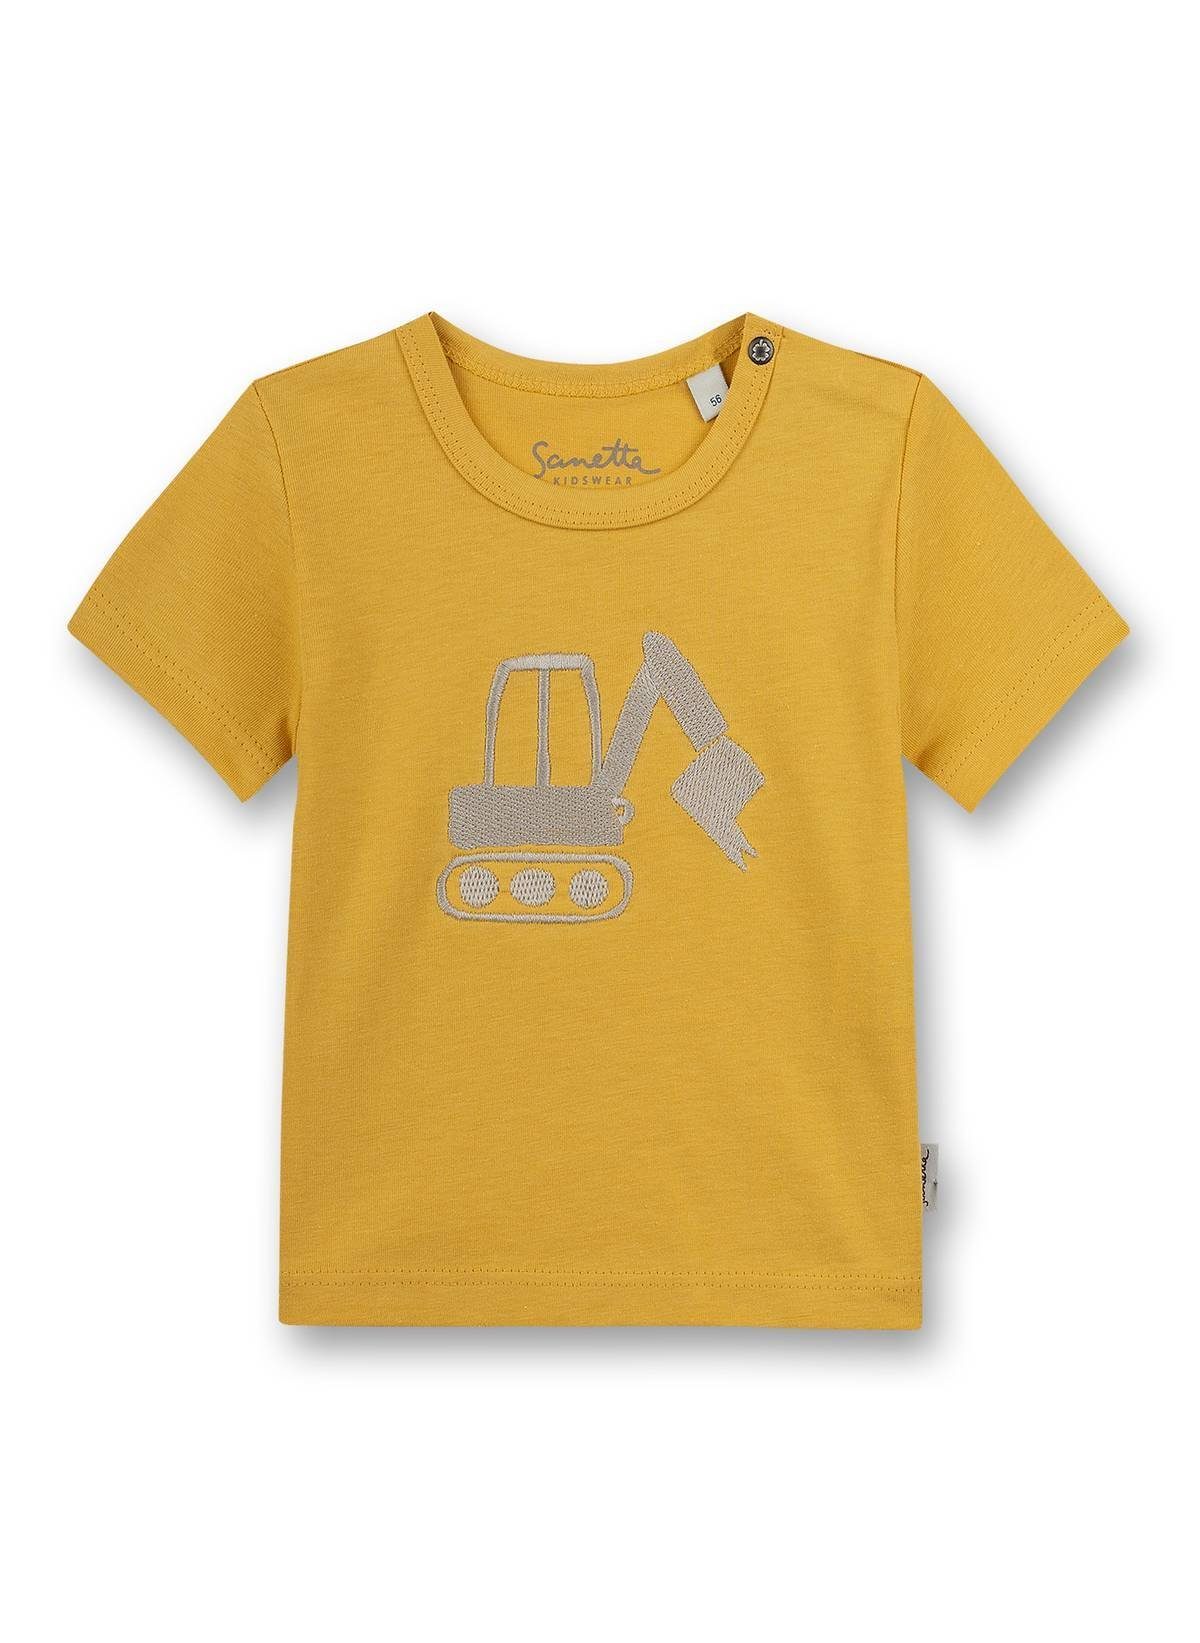 Gelb Rundhals T-Shirt - Jungen Baby, Kurzarm, Sanetta T-Shirt